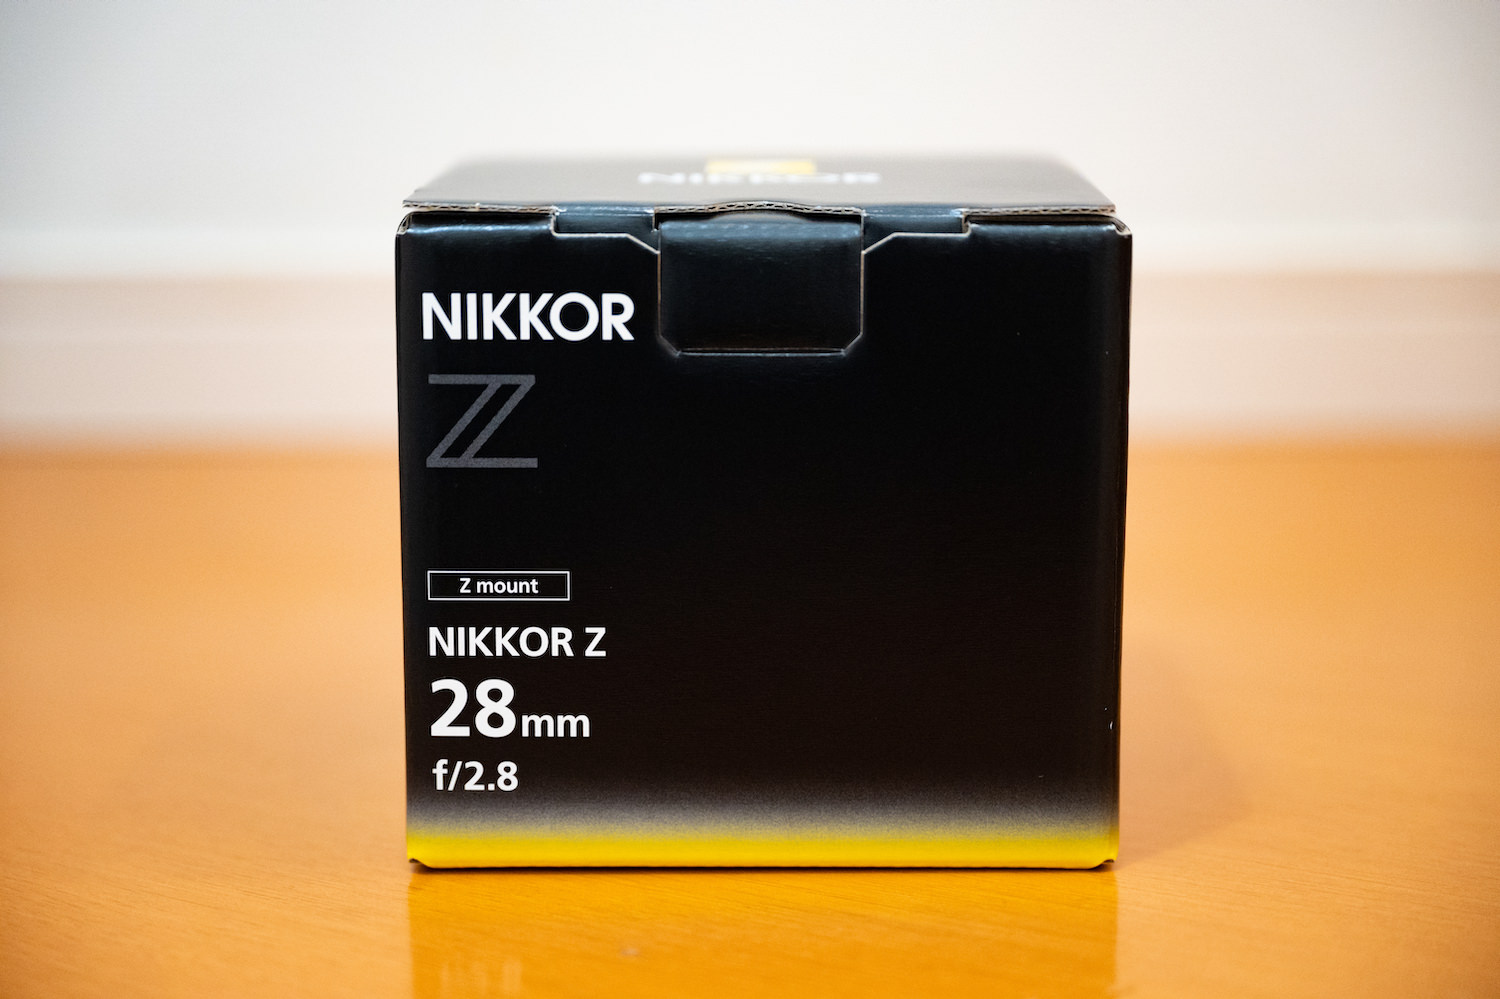 NIKKOR Z 28mm f/2.8